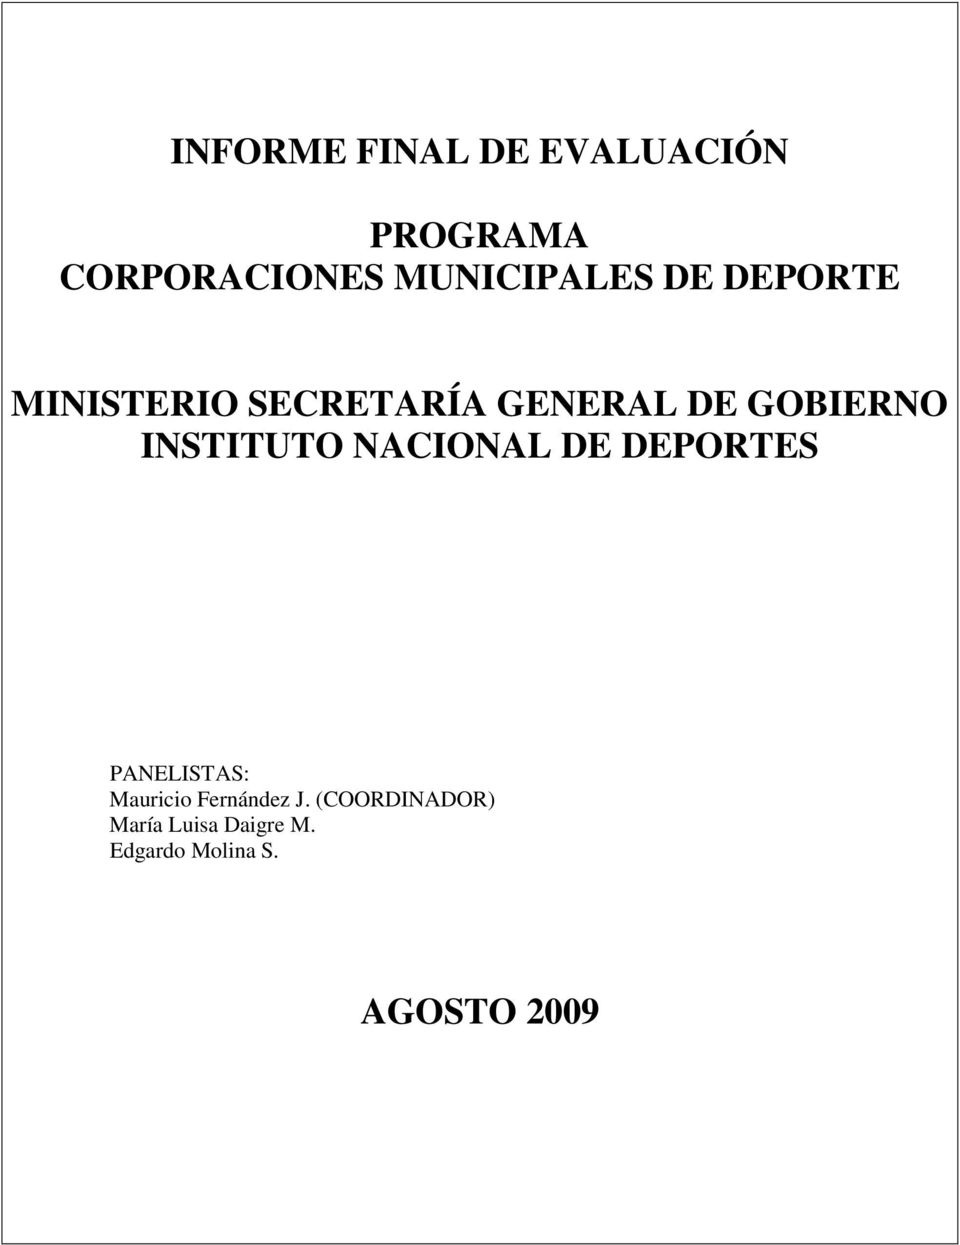 GOBIERNO INSTITUTO NACIONAL DE DEPORTES PANELISTAS: Mauricio